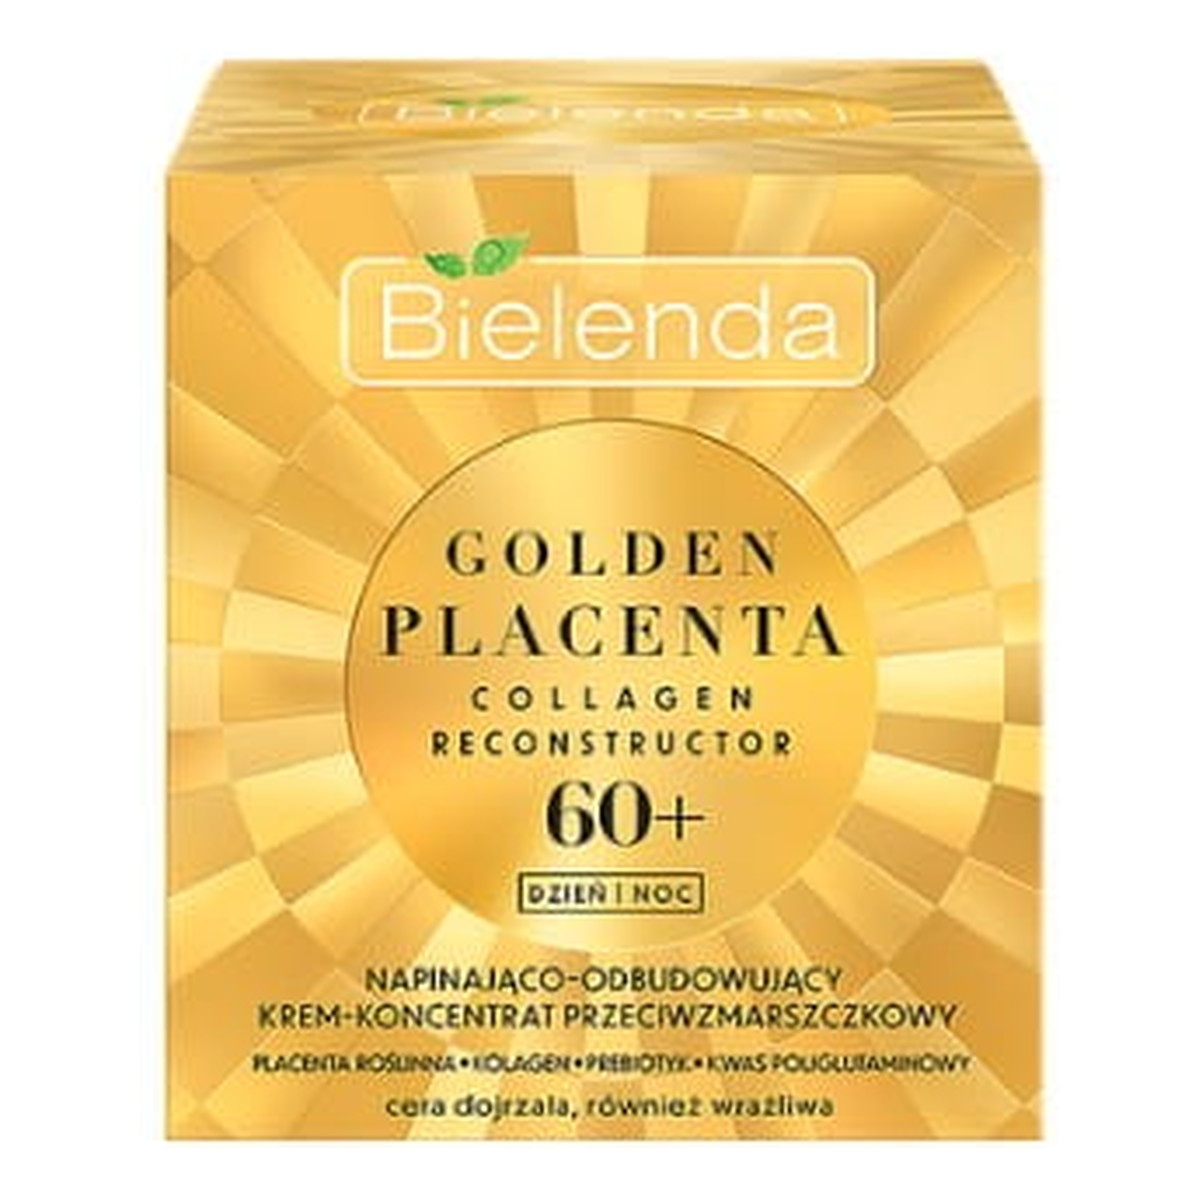 Bielenda Golden Placenta Napinająco - Odbudowujący Krem-koncentrat przeciwzmarszczkowy na dzień i noc 60+ 50ml